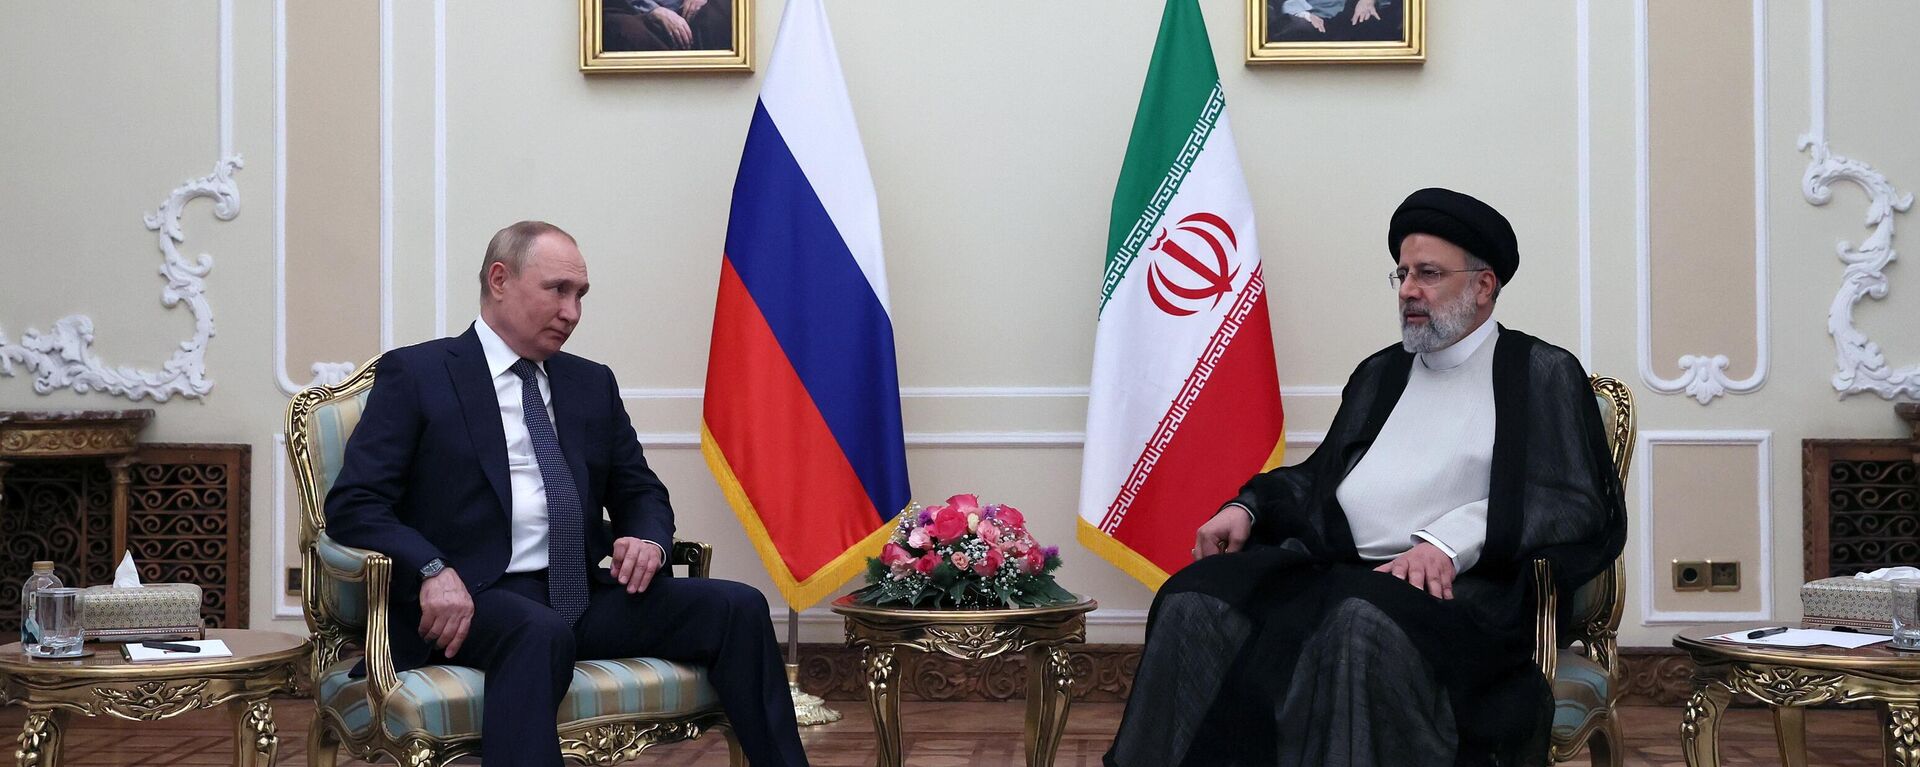 プーチン露大統領、イランのライシ大統領と会談　安全保障で連携強調 - Sputnik 日本, 1920, 20.07.2022